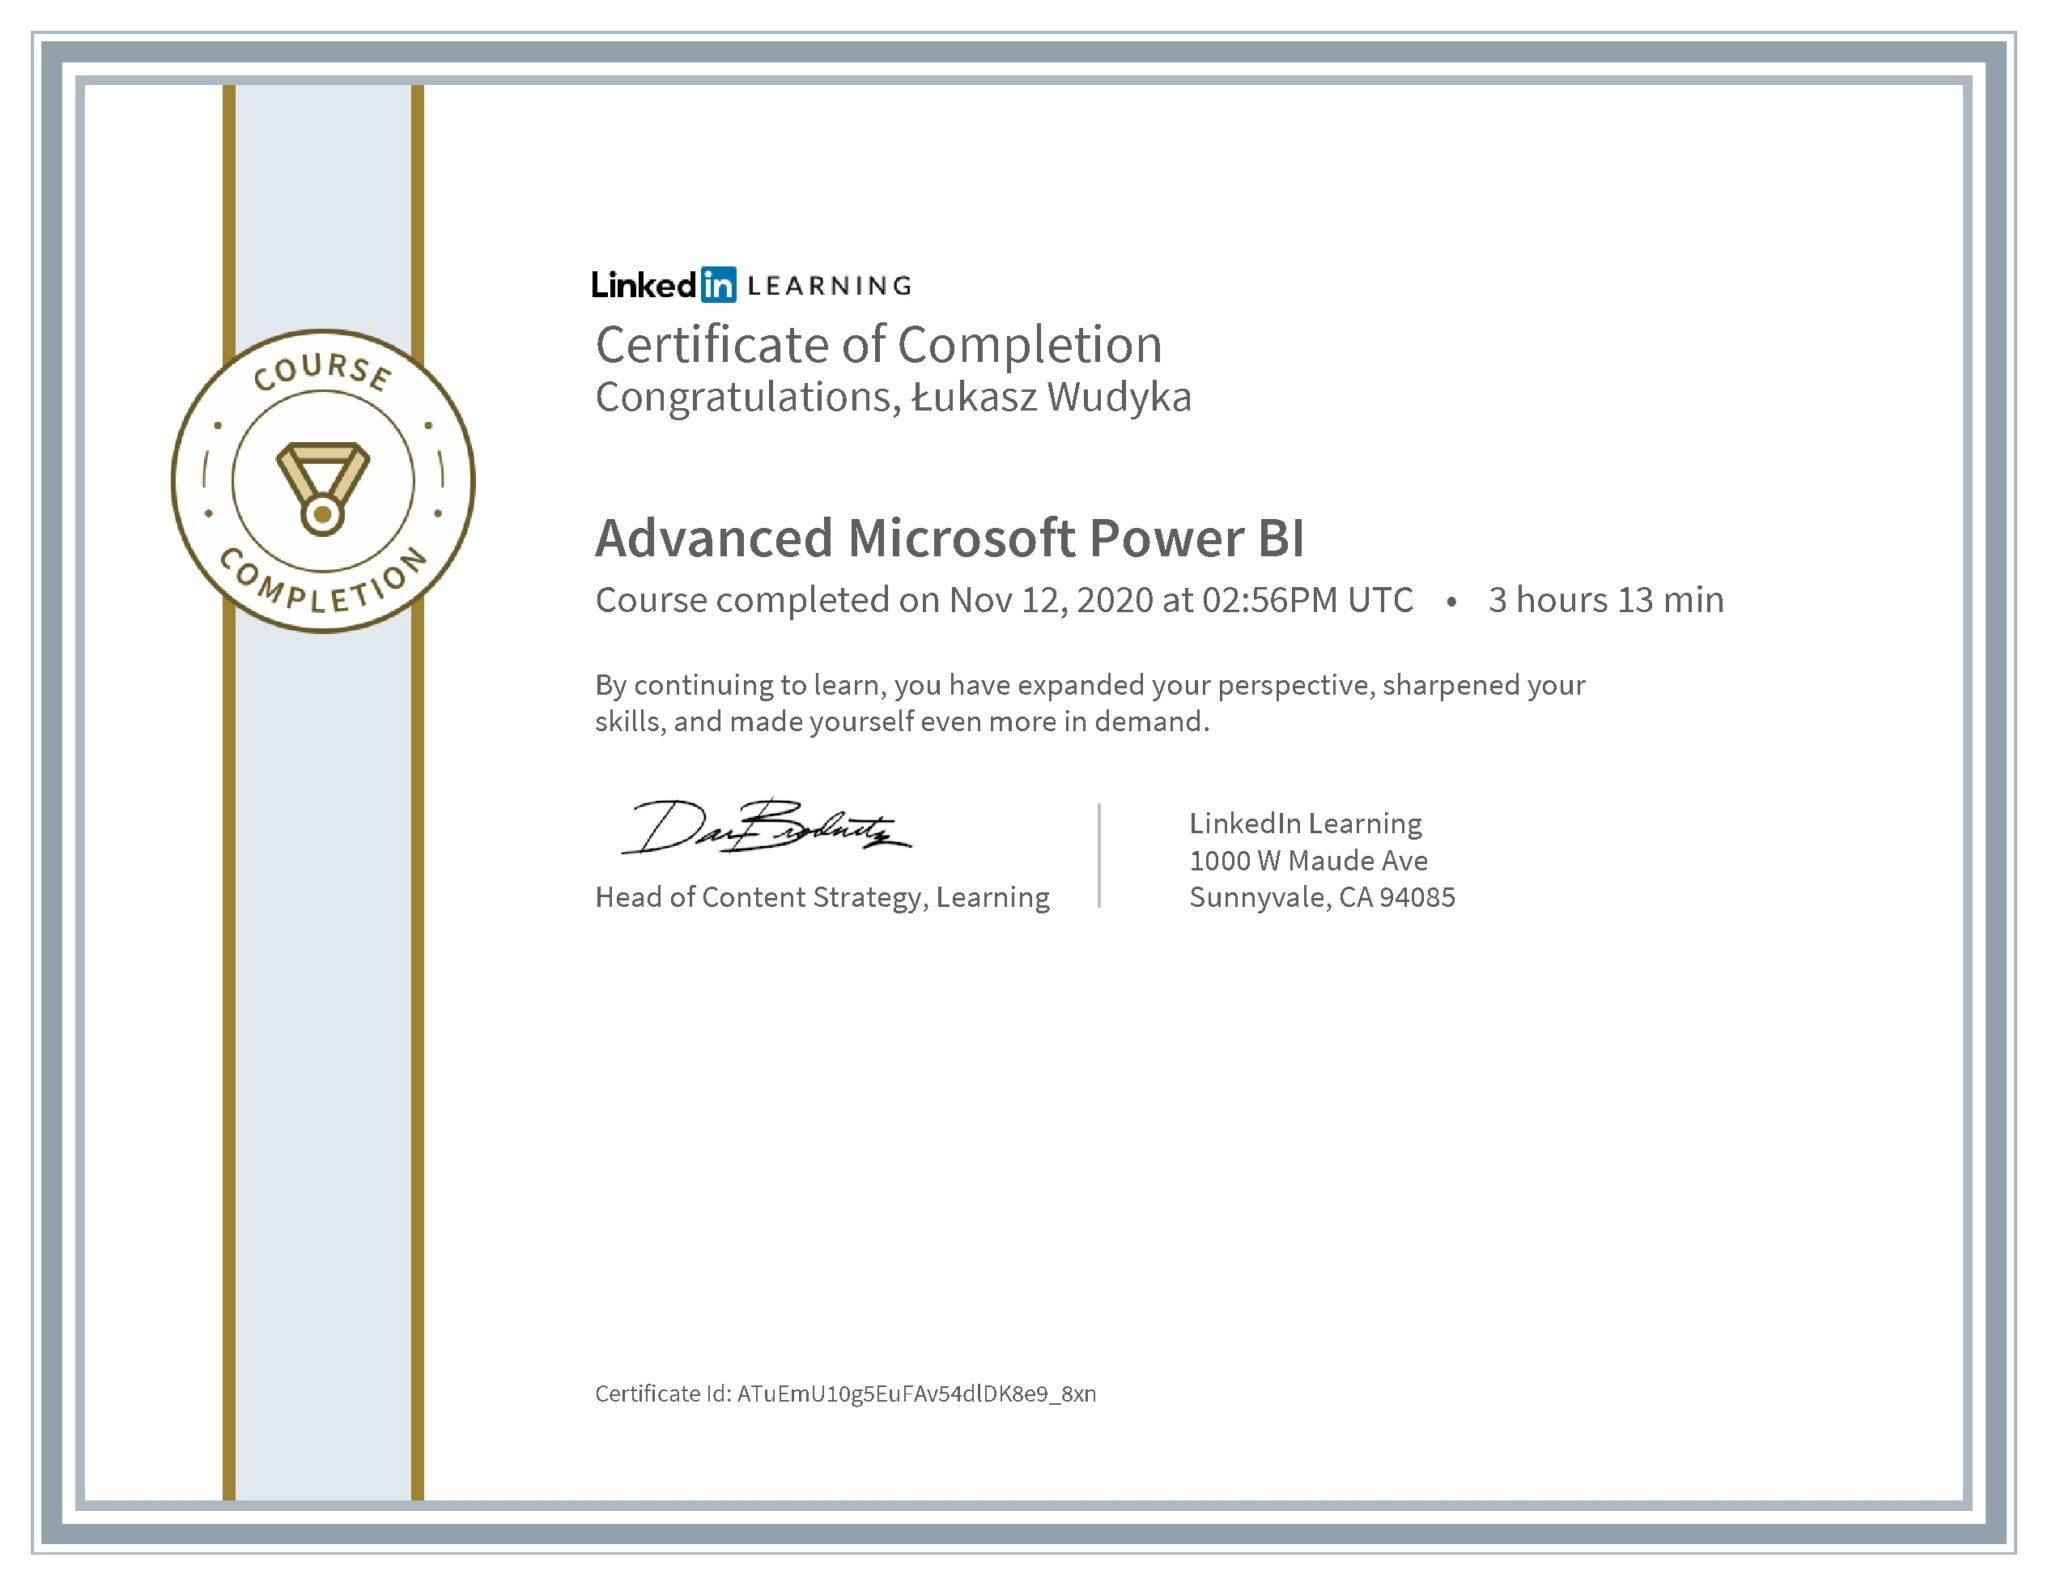 Łukasz Wudyka certyfikat LinkedIn Advanced Microsoft Power BI